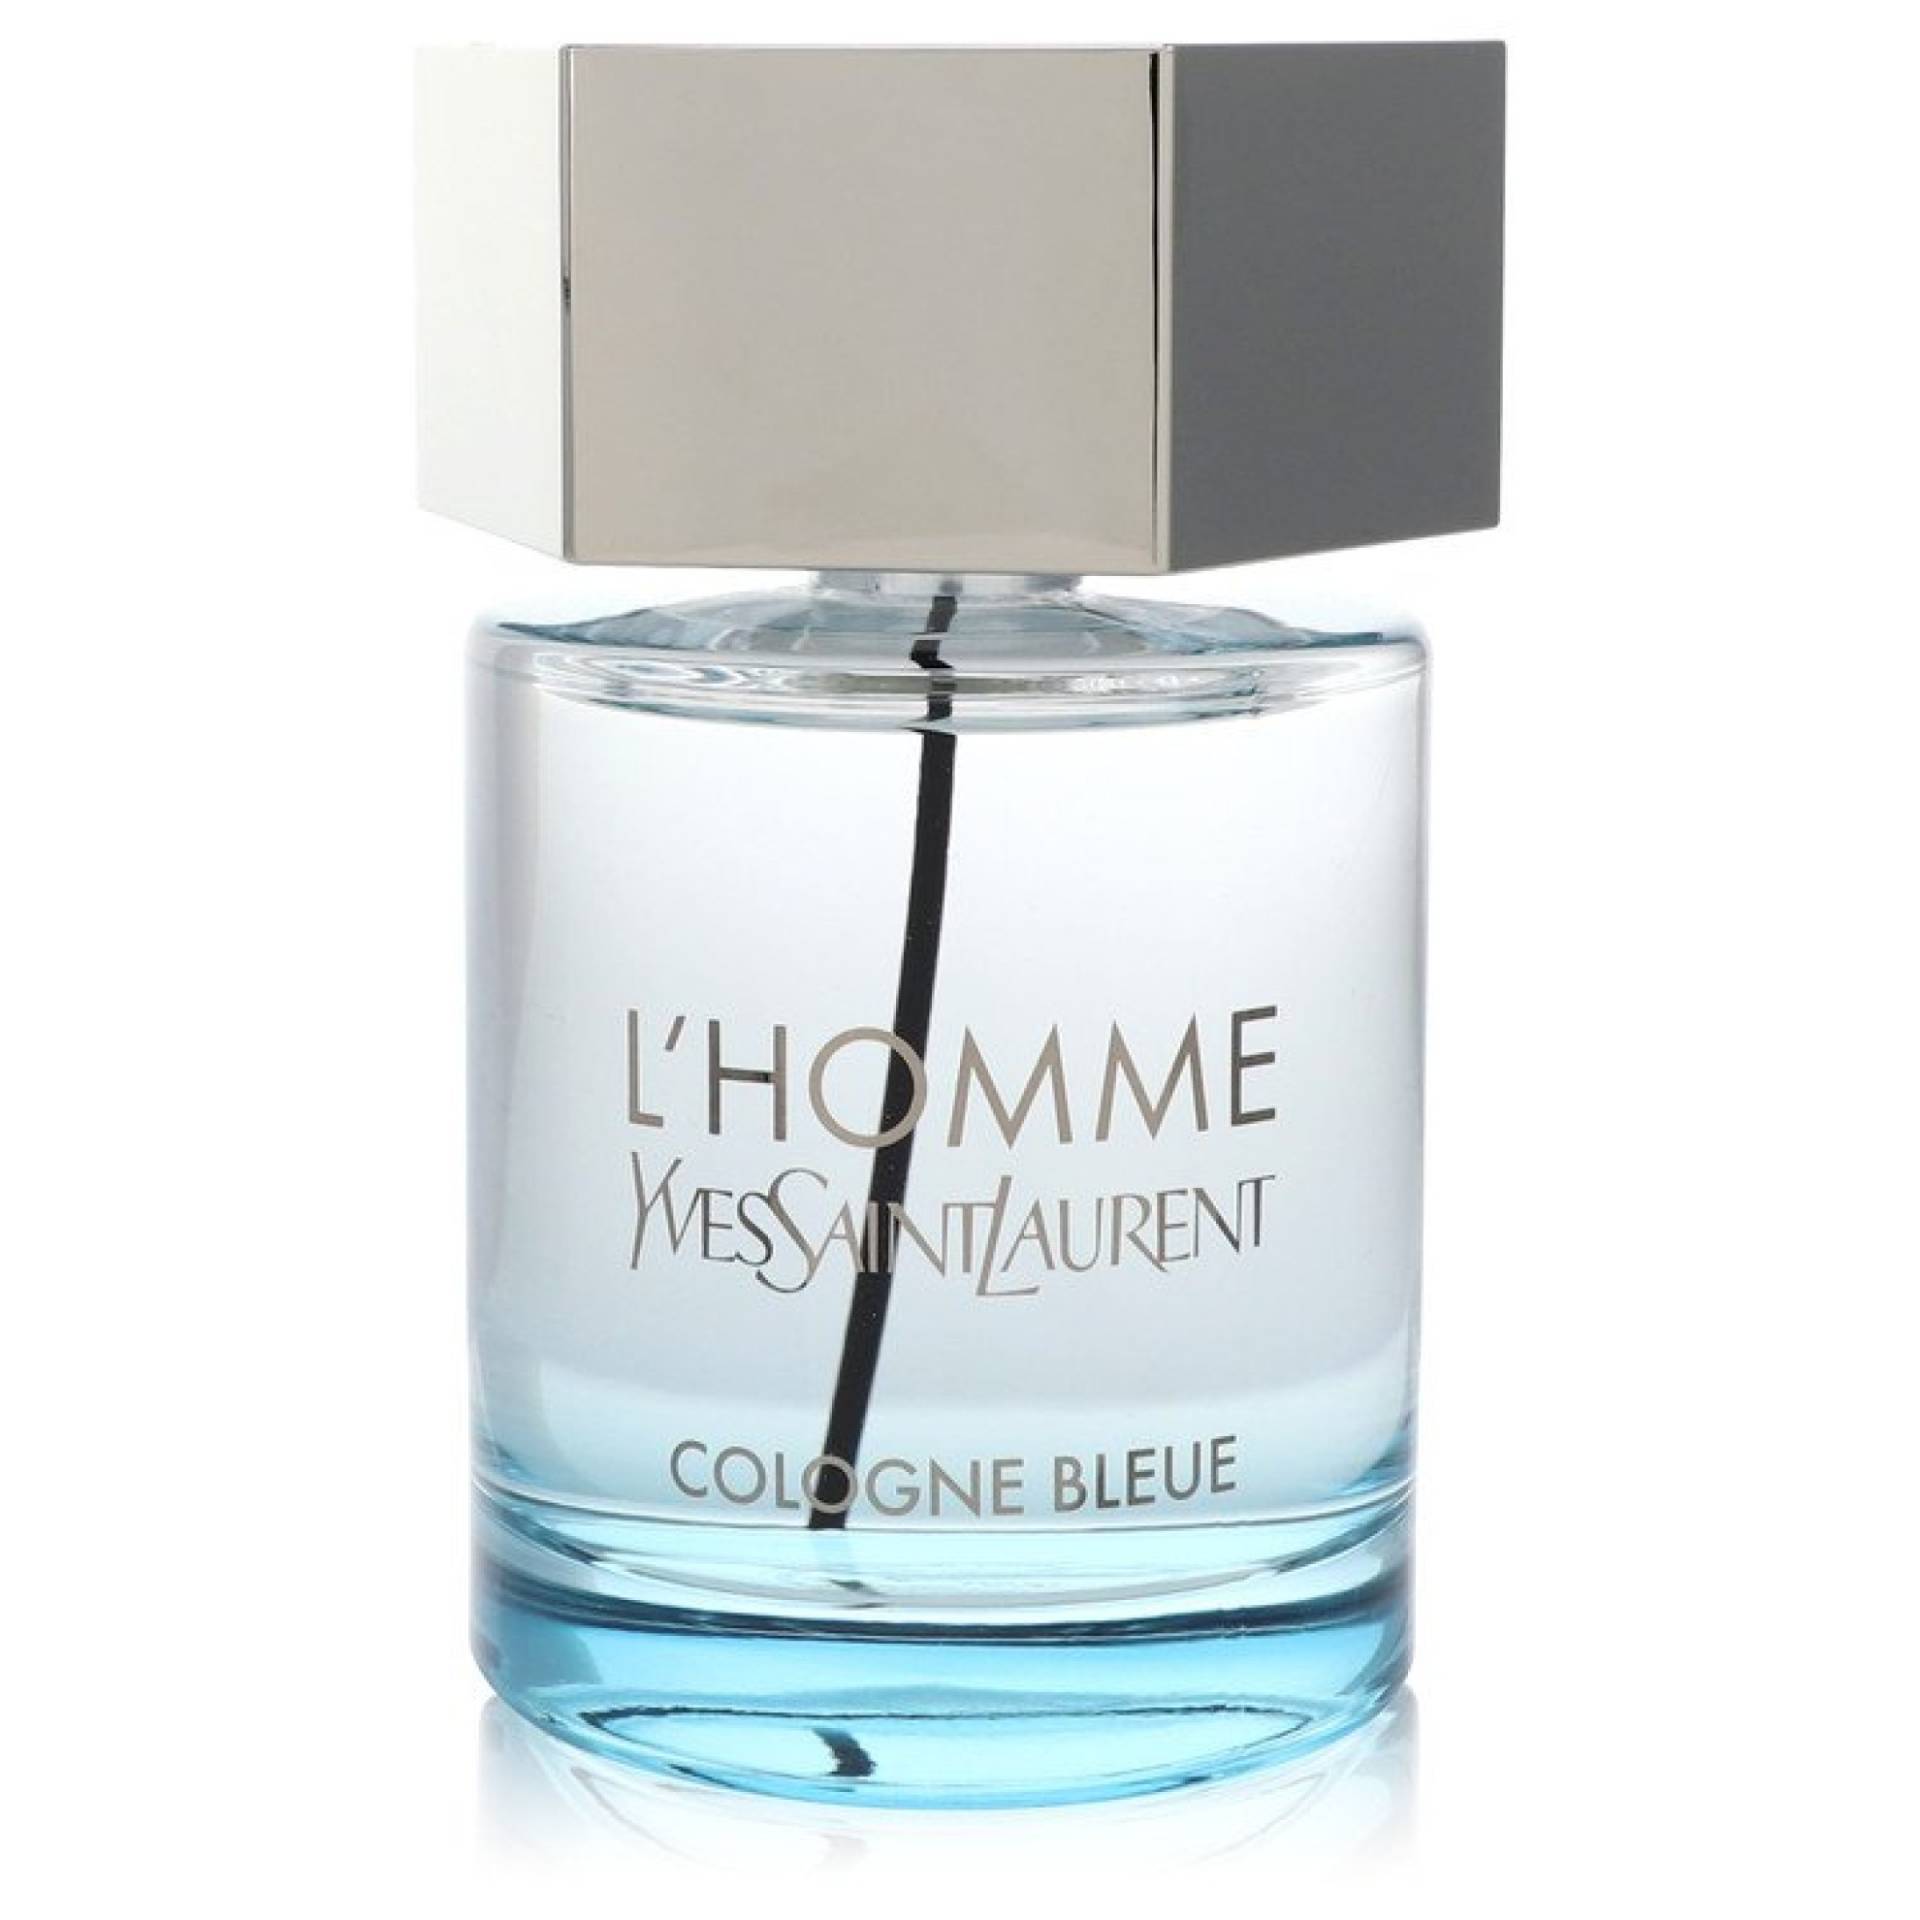 Yves Saint Laurent L'homme Cologne Bleue Eau De Toilette Spray (unboxed) 100 ml von Yves Saint Laurent